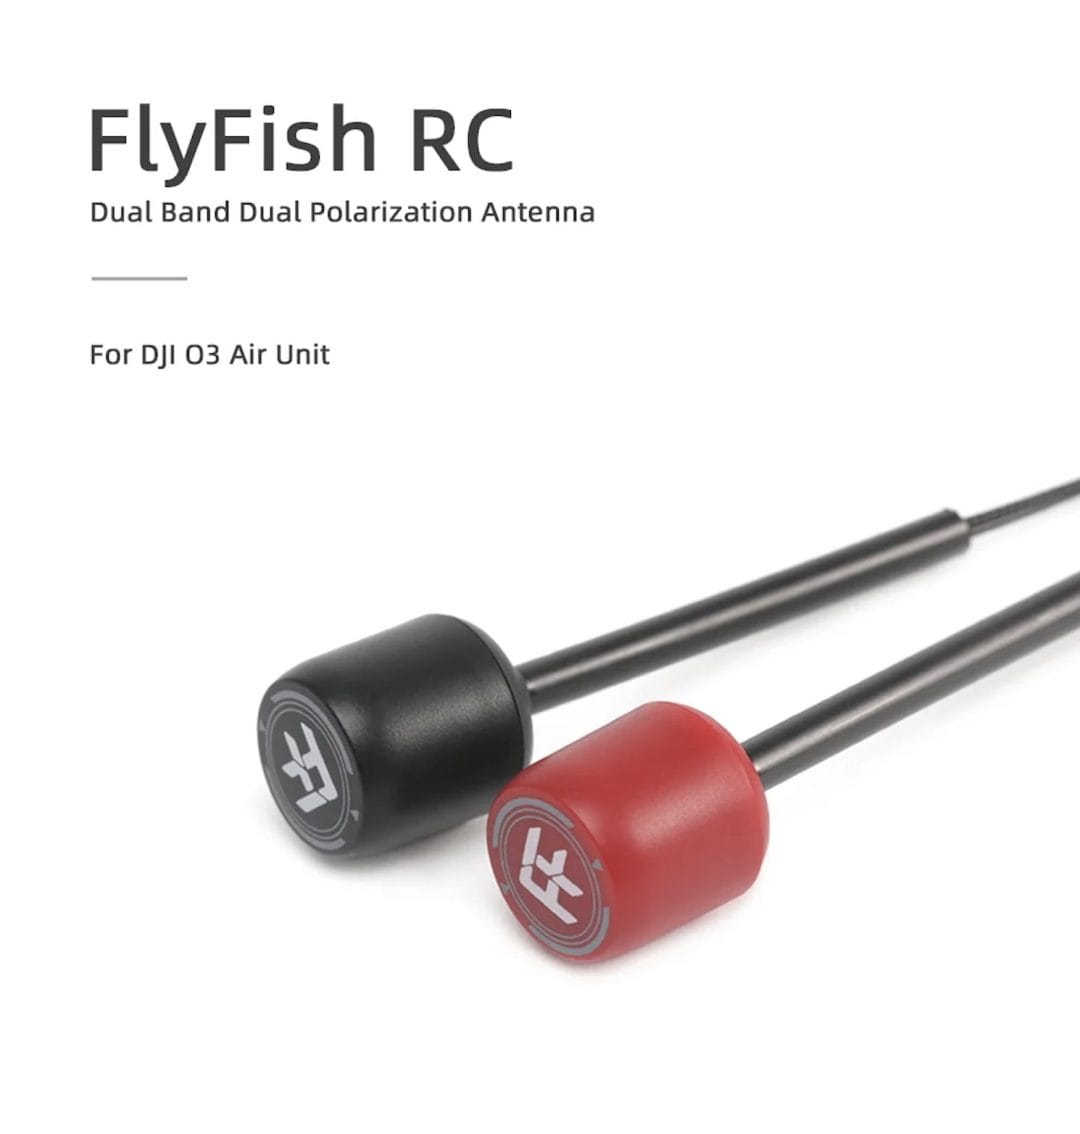 flyfishrc dual band 5 8ghz 2 4ghz 95mm black ufl antenna for dji o3 description 01